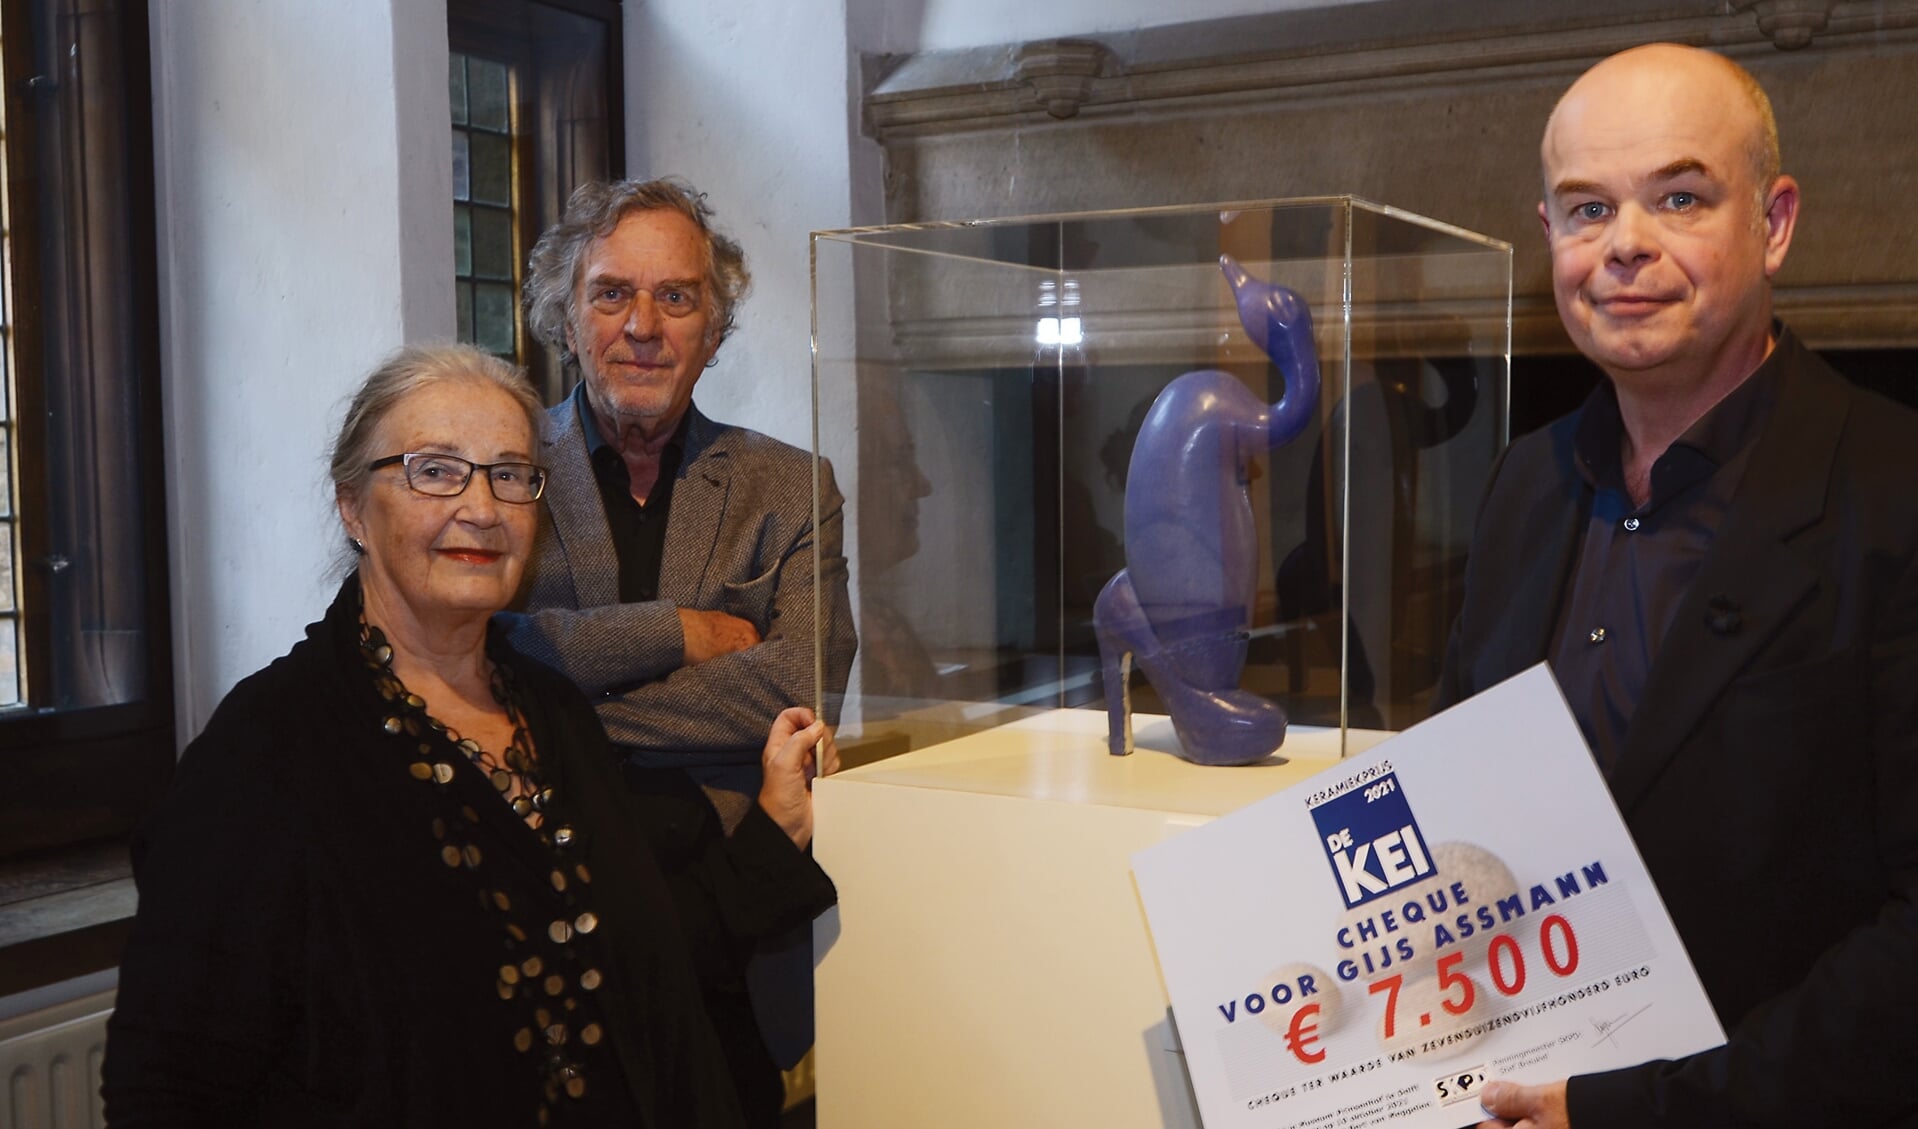 Gijs Assmann is de winnaar van de Keramiekprijs